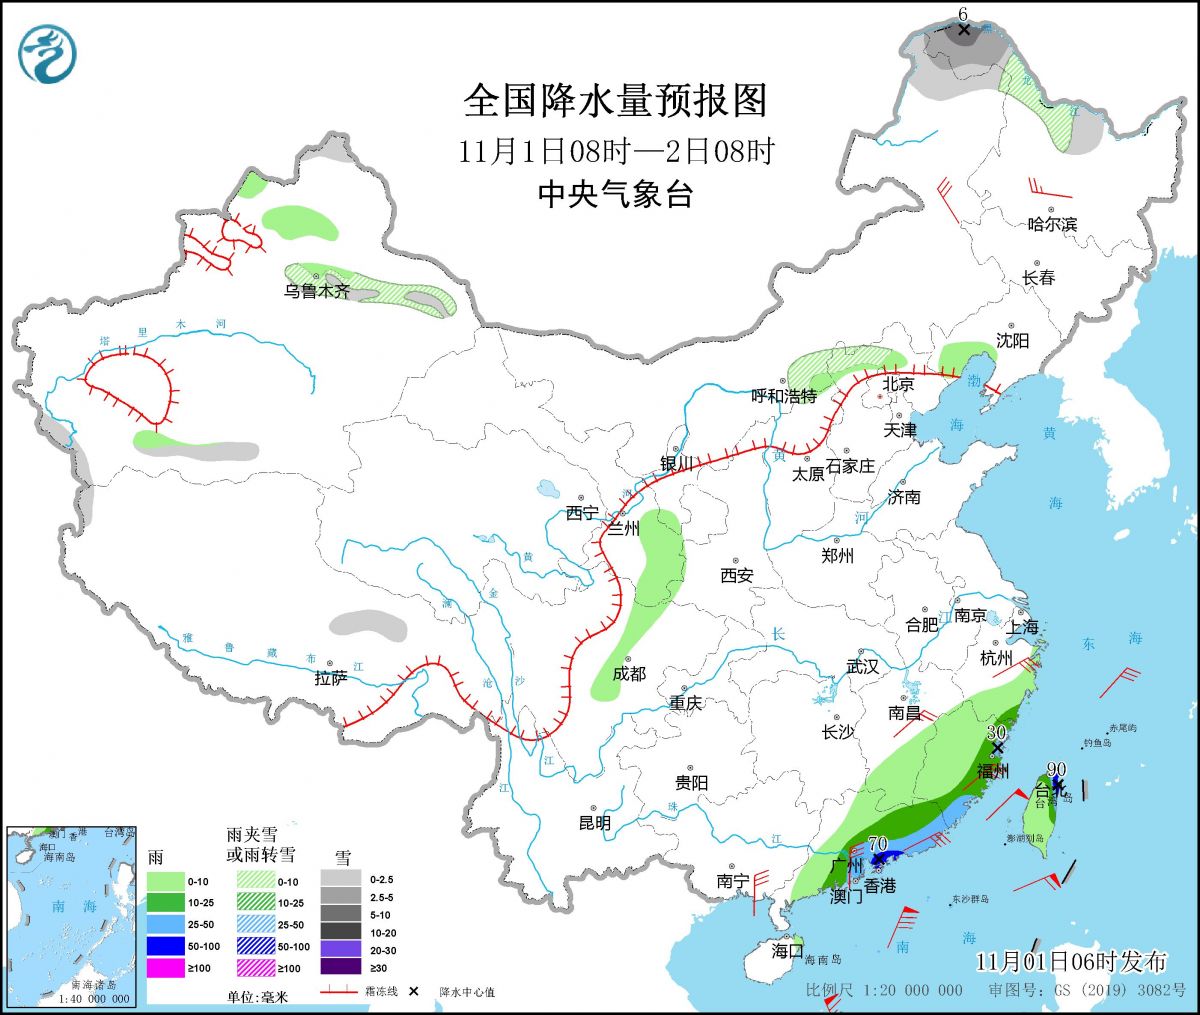 广东台风最新消息 2022第22号台风“尼格”实时位置路径预报